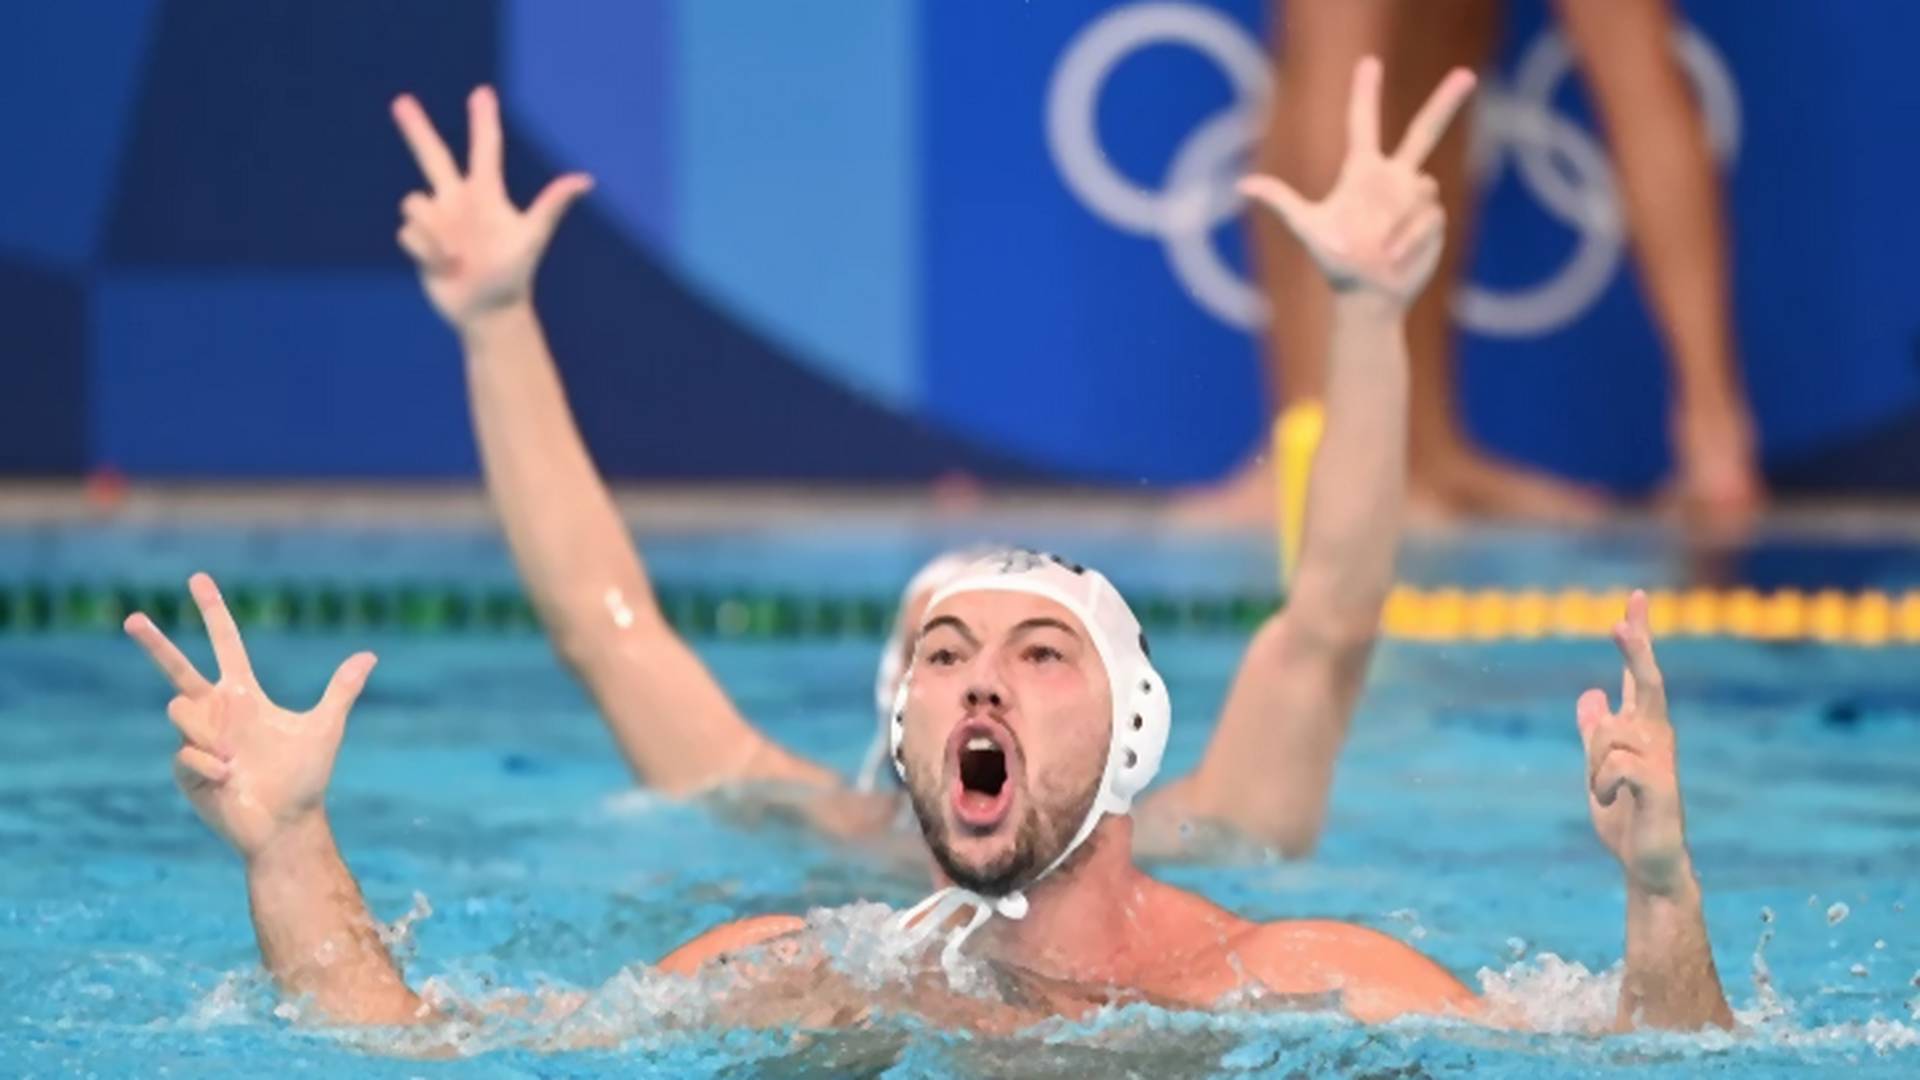 Srbija je ponovo osvojila olimpijsko zlato u vaterpolu: Delfini su nam priredili spektakl za pamćenje, bravo momci!